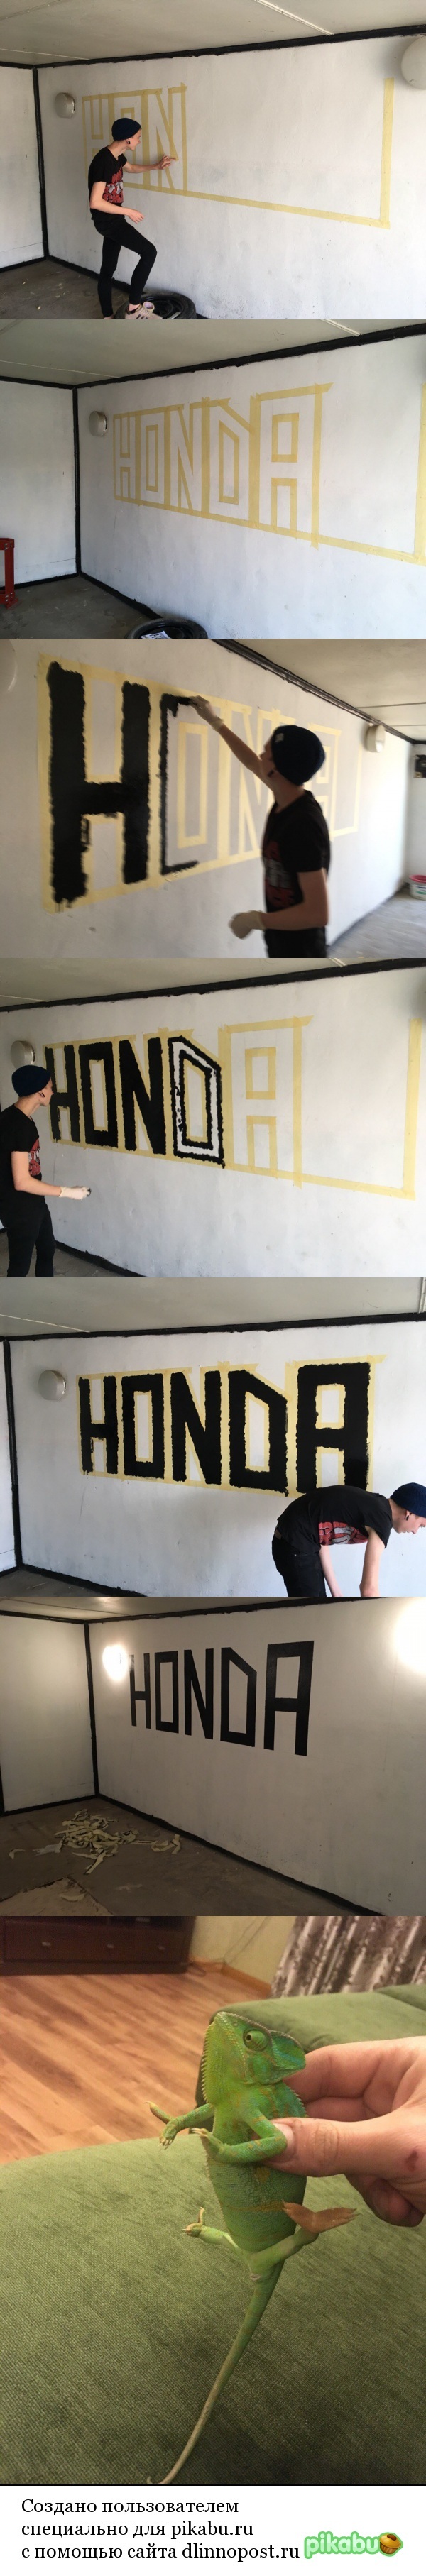    , , , Honda, 